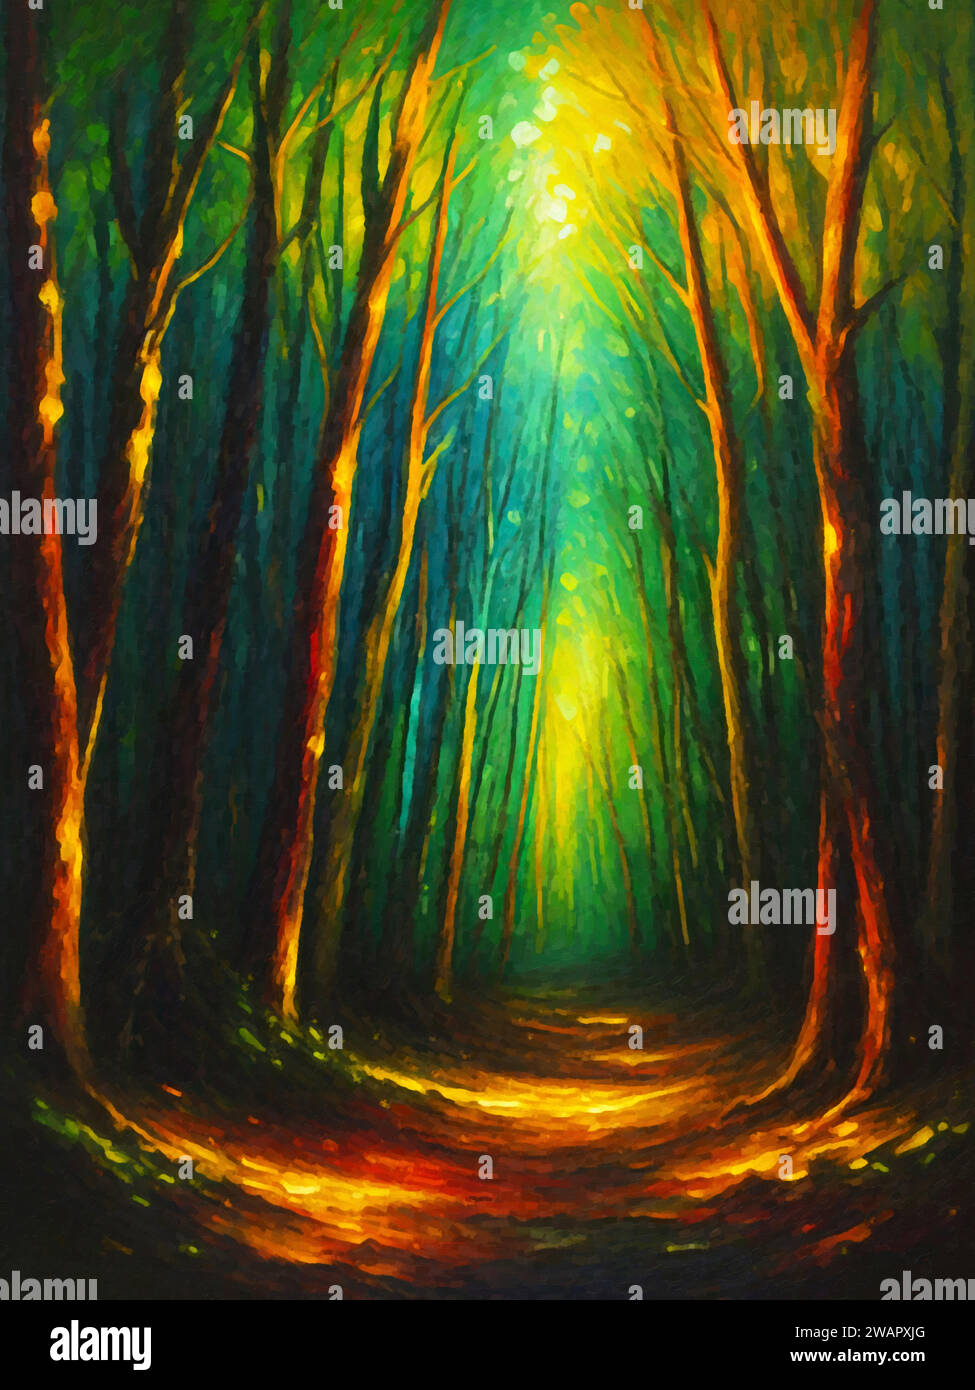 Light and Shadows (Forest Scene)' - Un dipinto che cattura l'interazione di luci e ombre tra alberi e fogliame in una foresta. Illustrazione Vettoriale